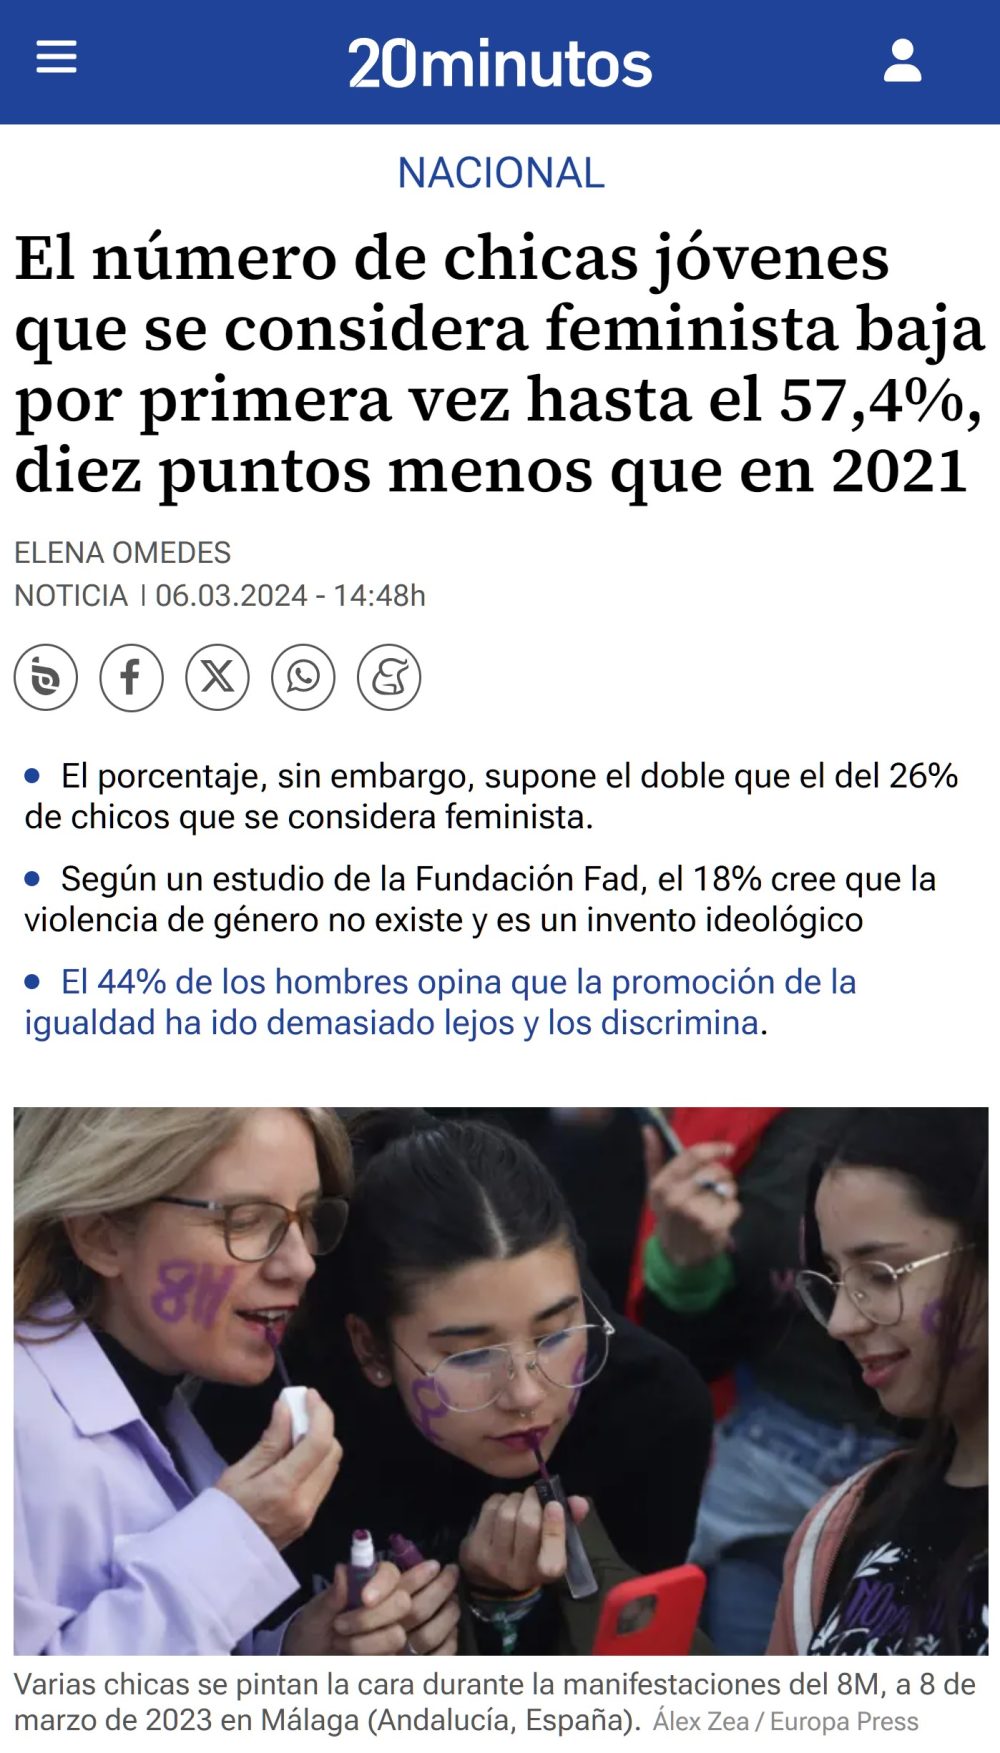 El nÃºmero de chicas jÃ³venes que se consideran feministas baja 10 puntos desde 2021